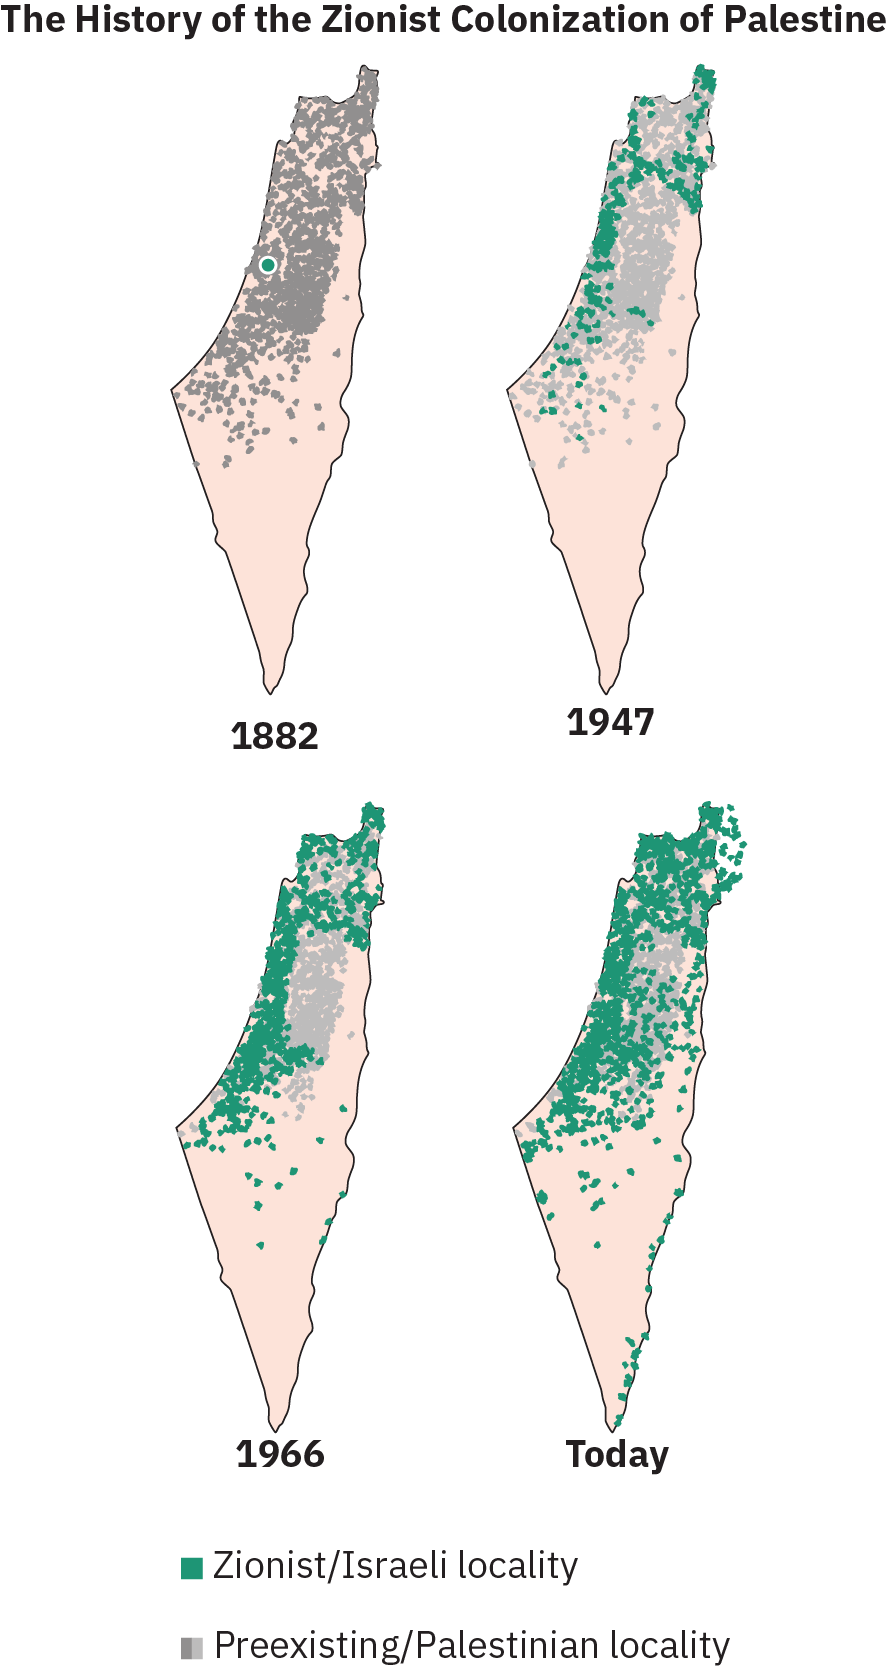 إنفوجرافيك يحمل عنوان «تاريخ الاستعمار الصهيوني لفلسطين» ويتألف من أربع خرائط منفصلة لما يعرف الآن بإسرائيل، يعود تاريخها إلى عام 1882 حتى اليوم. في خريطة عام 1882، تمت تغطية معظم الأراضي بعلامات تشير إلى البلدات الموجودة من قبل/الفلسطينية، مع وجود نقطة واحدة تشير إلى منطقة صهيونية/إسرائيلية. في الخريطة المُسمّاة عام 1947، زاد عدد المستوطنات الصهيونية الإسرائيلية إلى حوالي ثلث جميع المستوطنات. وفي خريطة عام 1966، زاد الاستيطان الصهايوني/الإسرائيلي أكثر من ذلك، حيث أصبح يضم الآن أكثر من نصف جميع المستوطنات. في الخريطة المُصنَّفة اليوم، تهيمن المستوطنات الصهيونية/الإسرائيلية، مع احتلال المستوطنات الموجودة مسبقاً/فلسطينية على عدد قليل من المناطق.